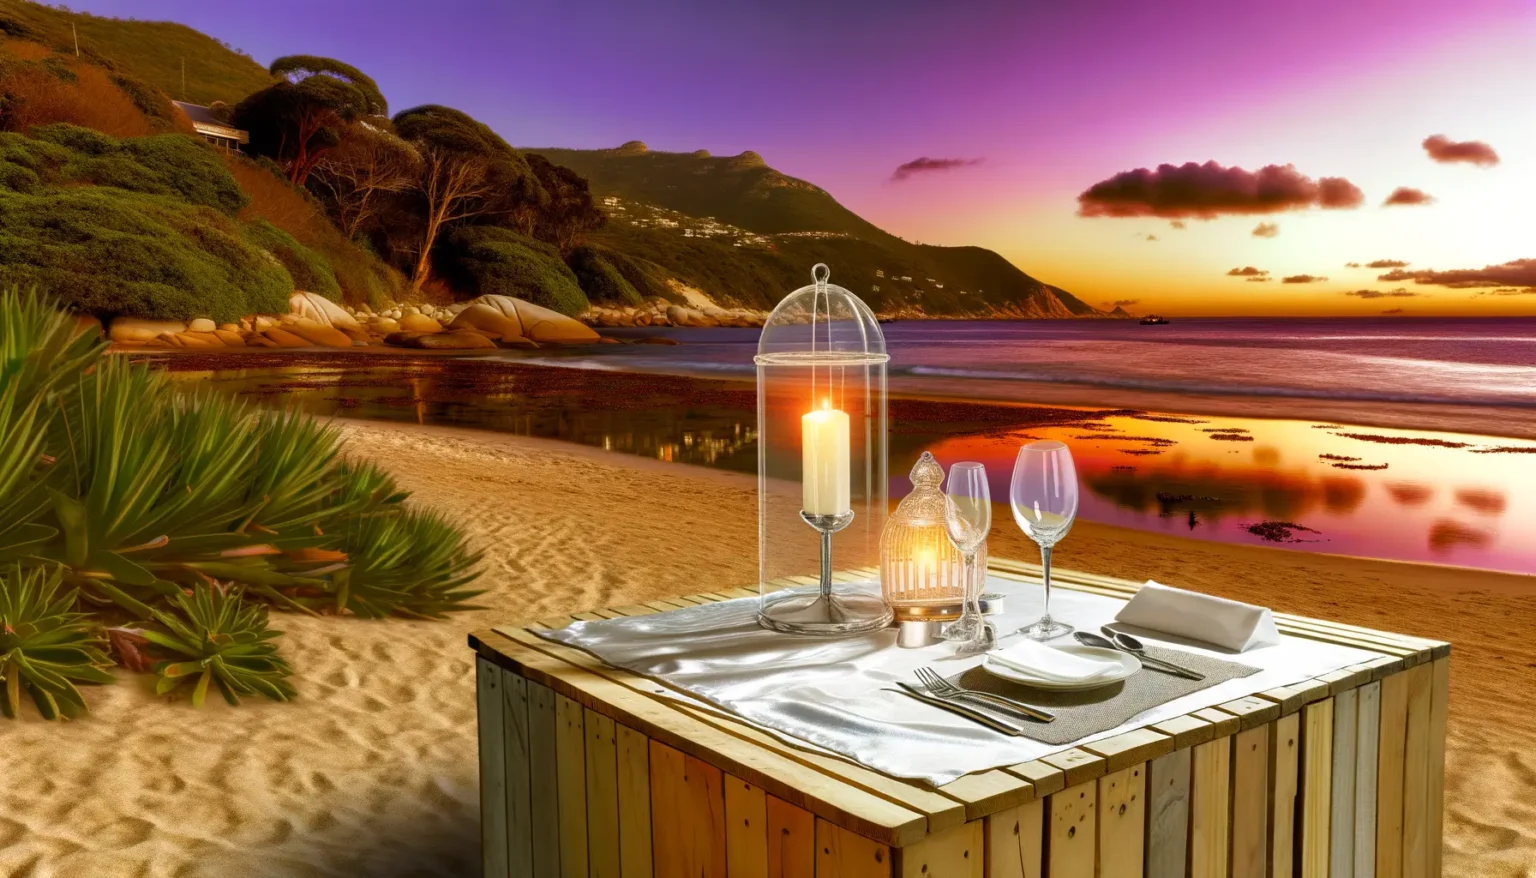 Ein romantisch gedeckter Tisch für zwei Personen steht am Strand bei Sonnenuntergang. Der Himmel hat lebhafte Lila- und Orangetöne, und die ruhige See reflektiert die warmen Farben des Himmels. Auf dem Tisch befinden sich ein weißes Tischtuch, ein leuchtendes Kerzenlicht unter einer Glasglocke, einige Weingläser und ein schlichtes Geschirrset. Im Hintergrund sind sanfte Hügel mit üppigem Grün und einigen Häusern zu sehen.